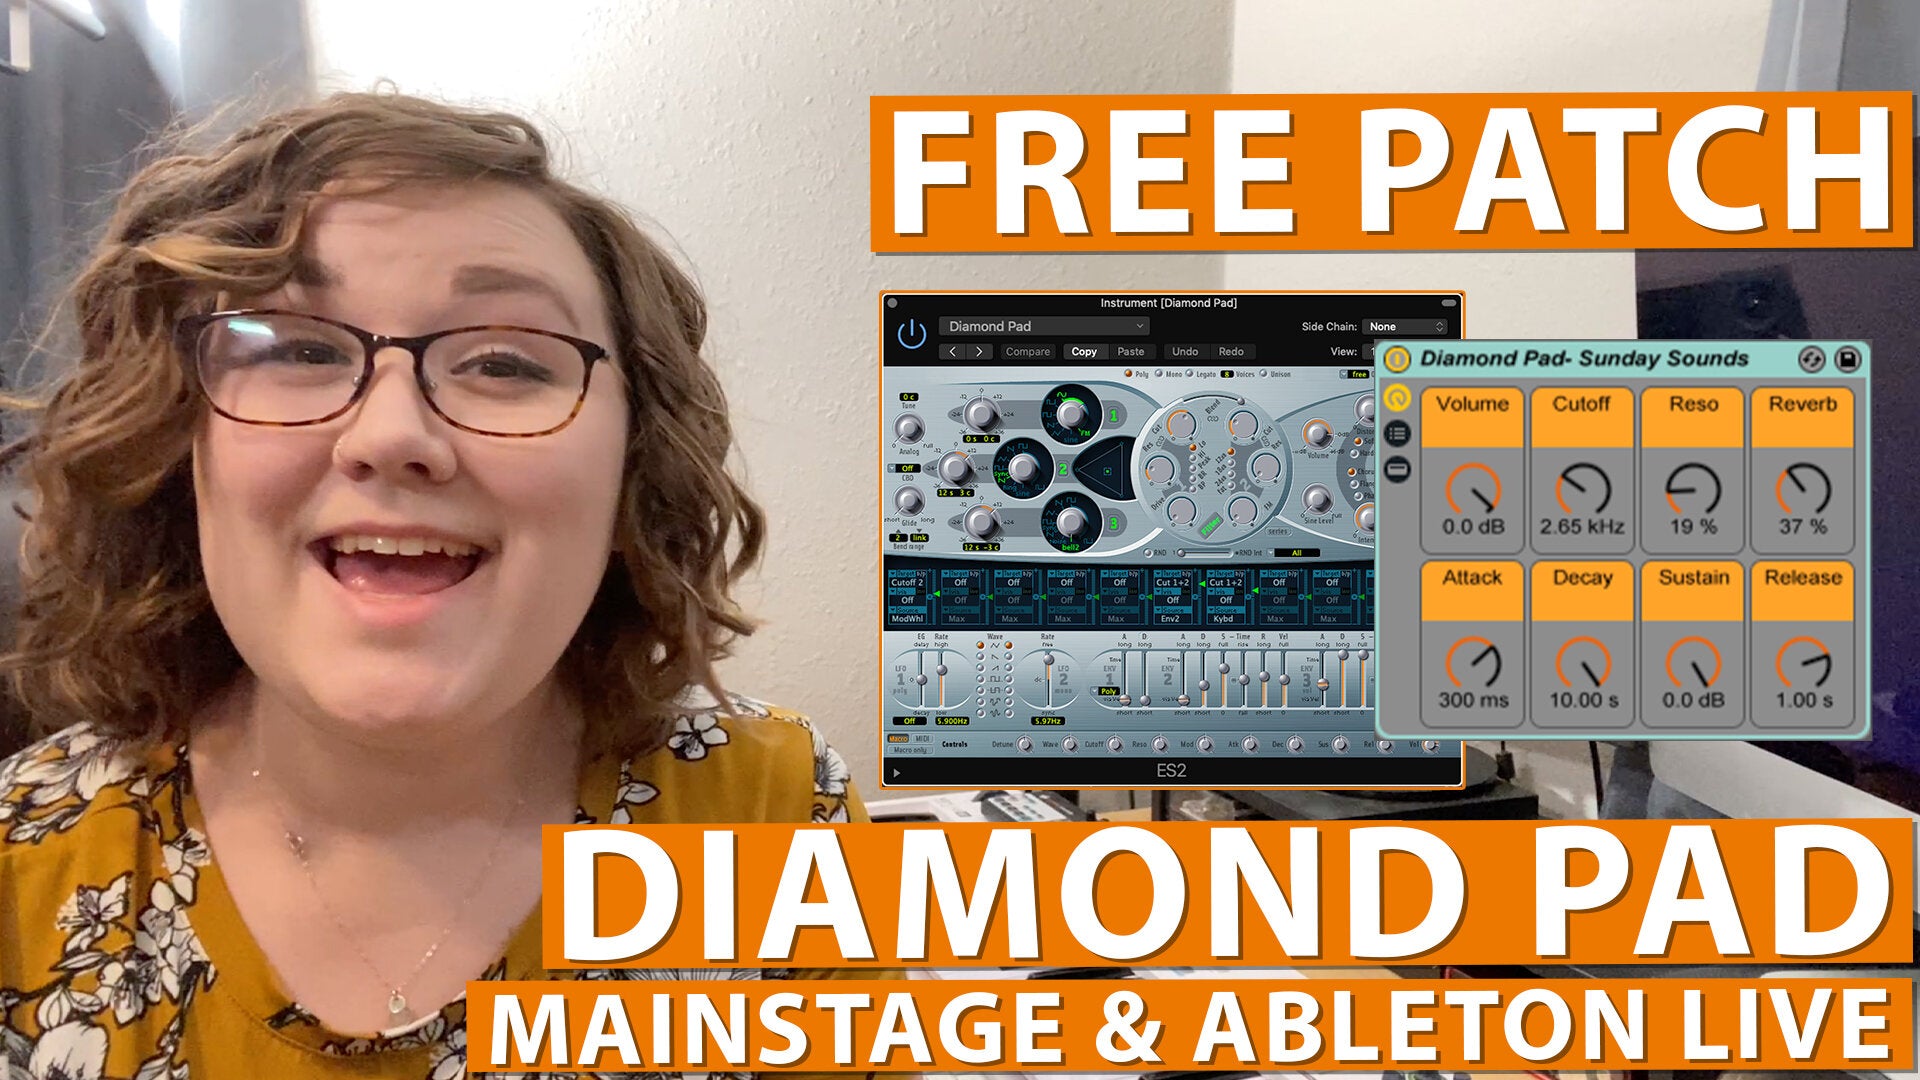 Free MainStage & Ableton Worship Patch! - Diamond Pad